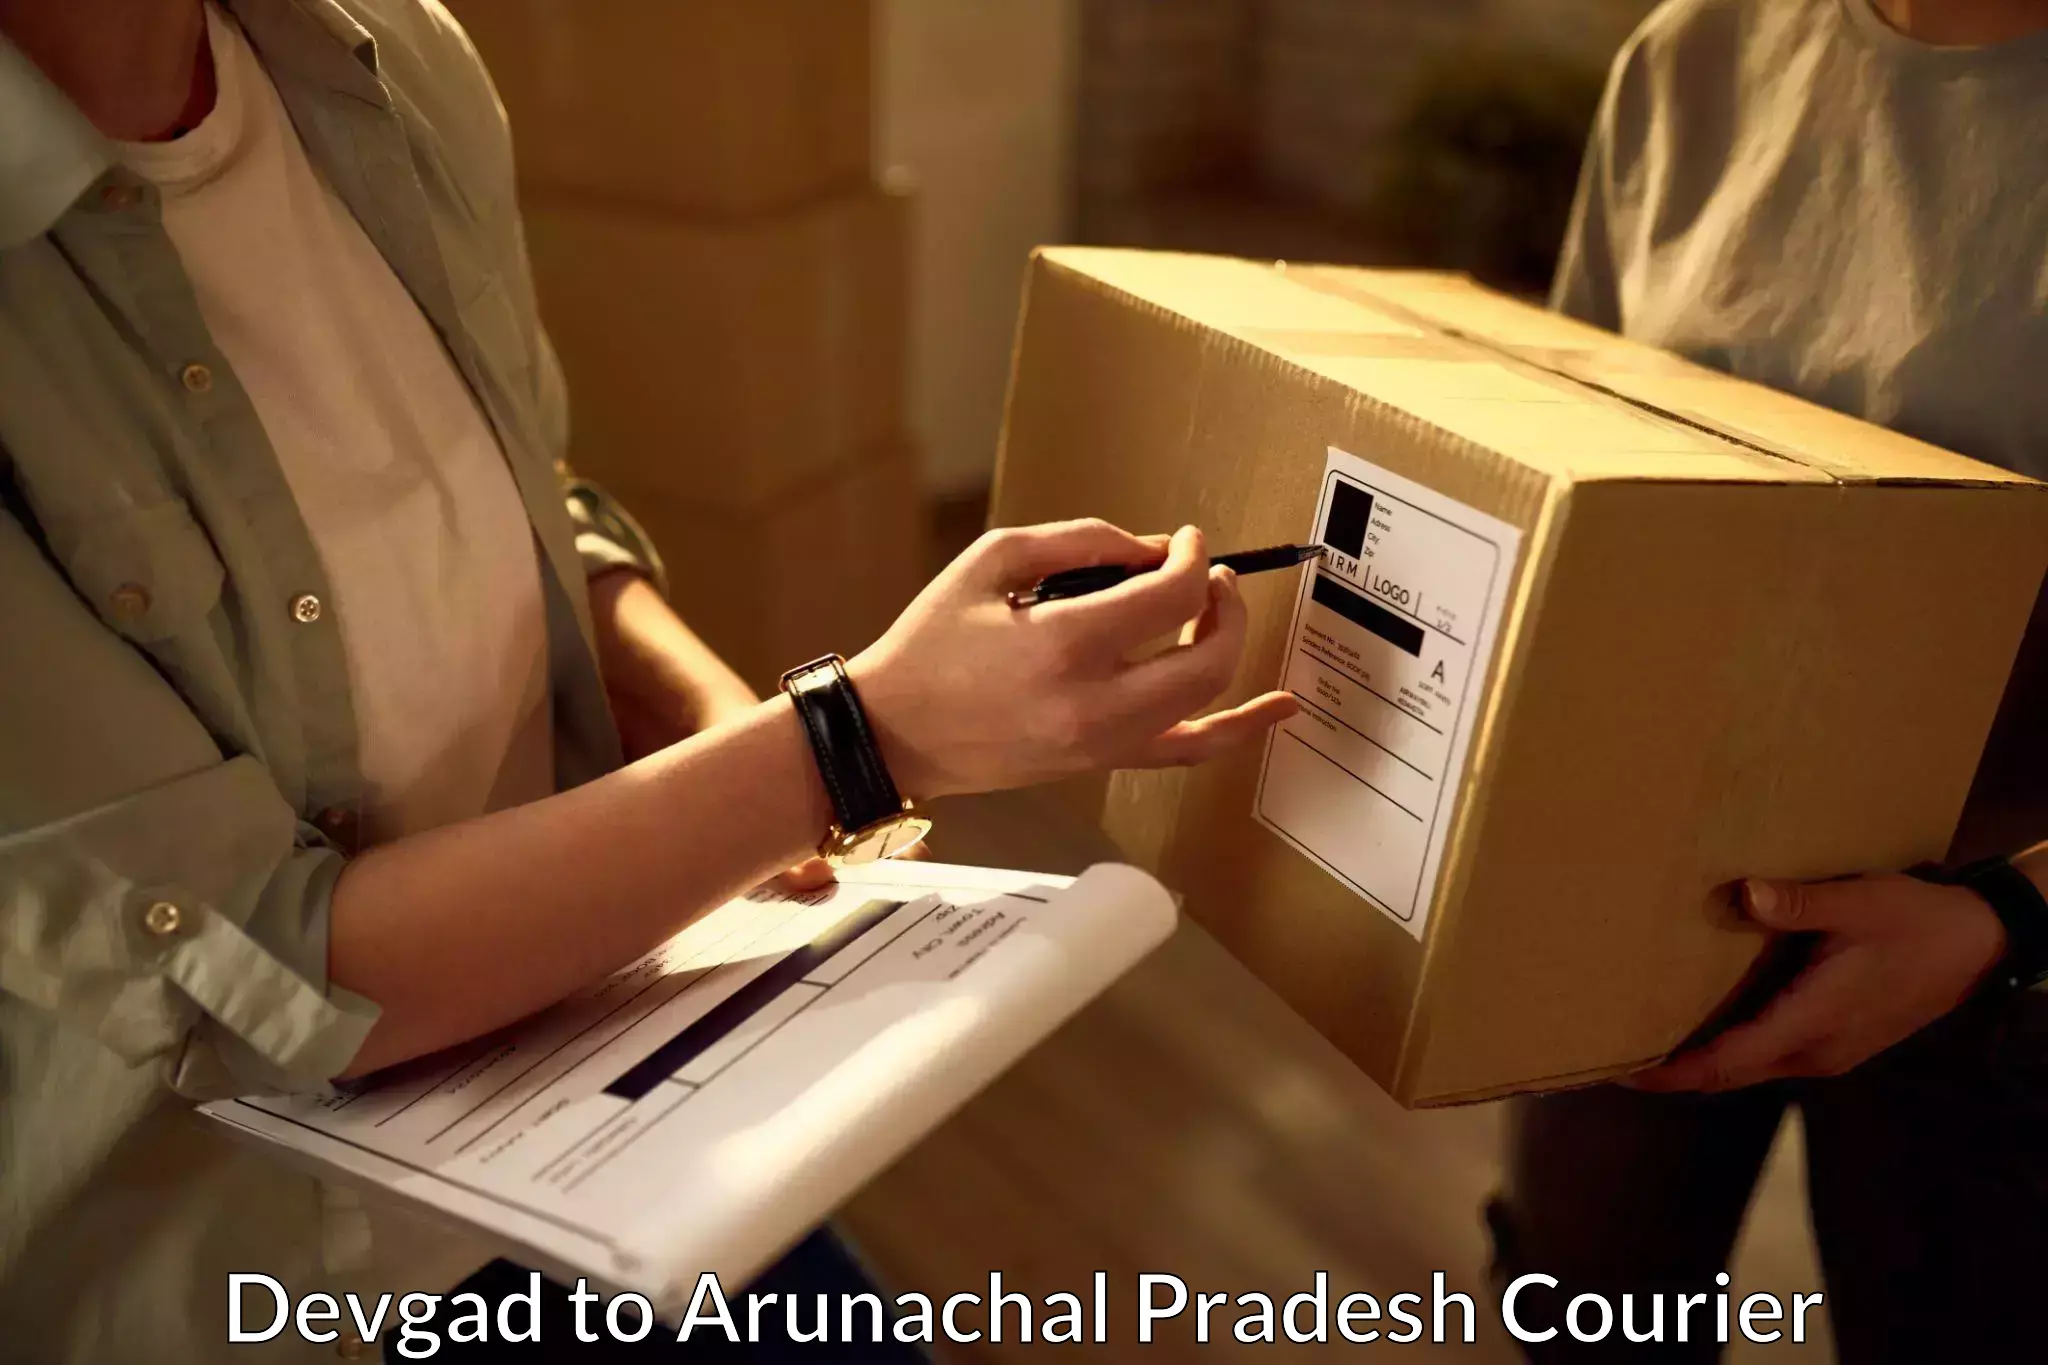 Efficient cargo handling Devgad to Arunachal Pradesh